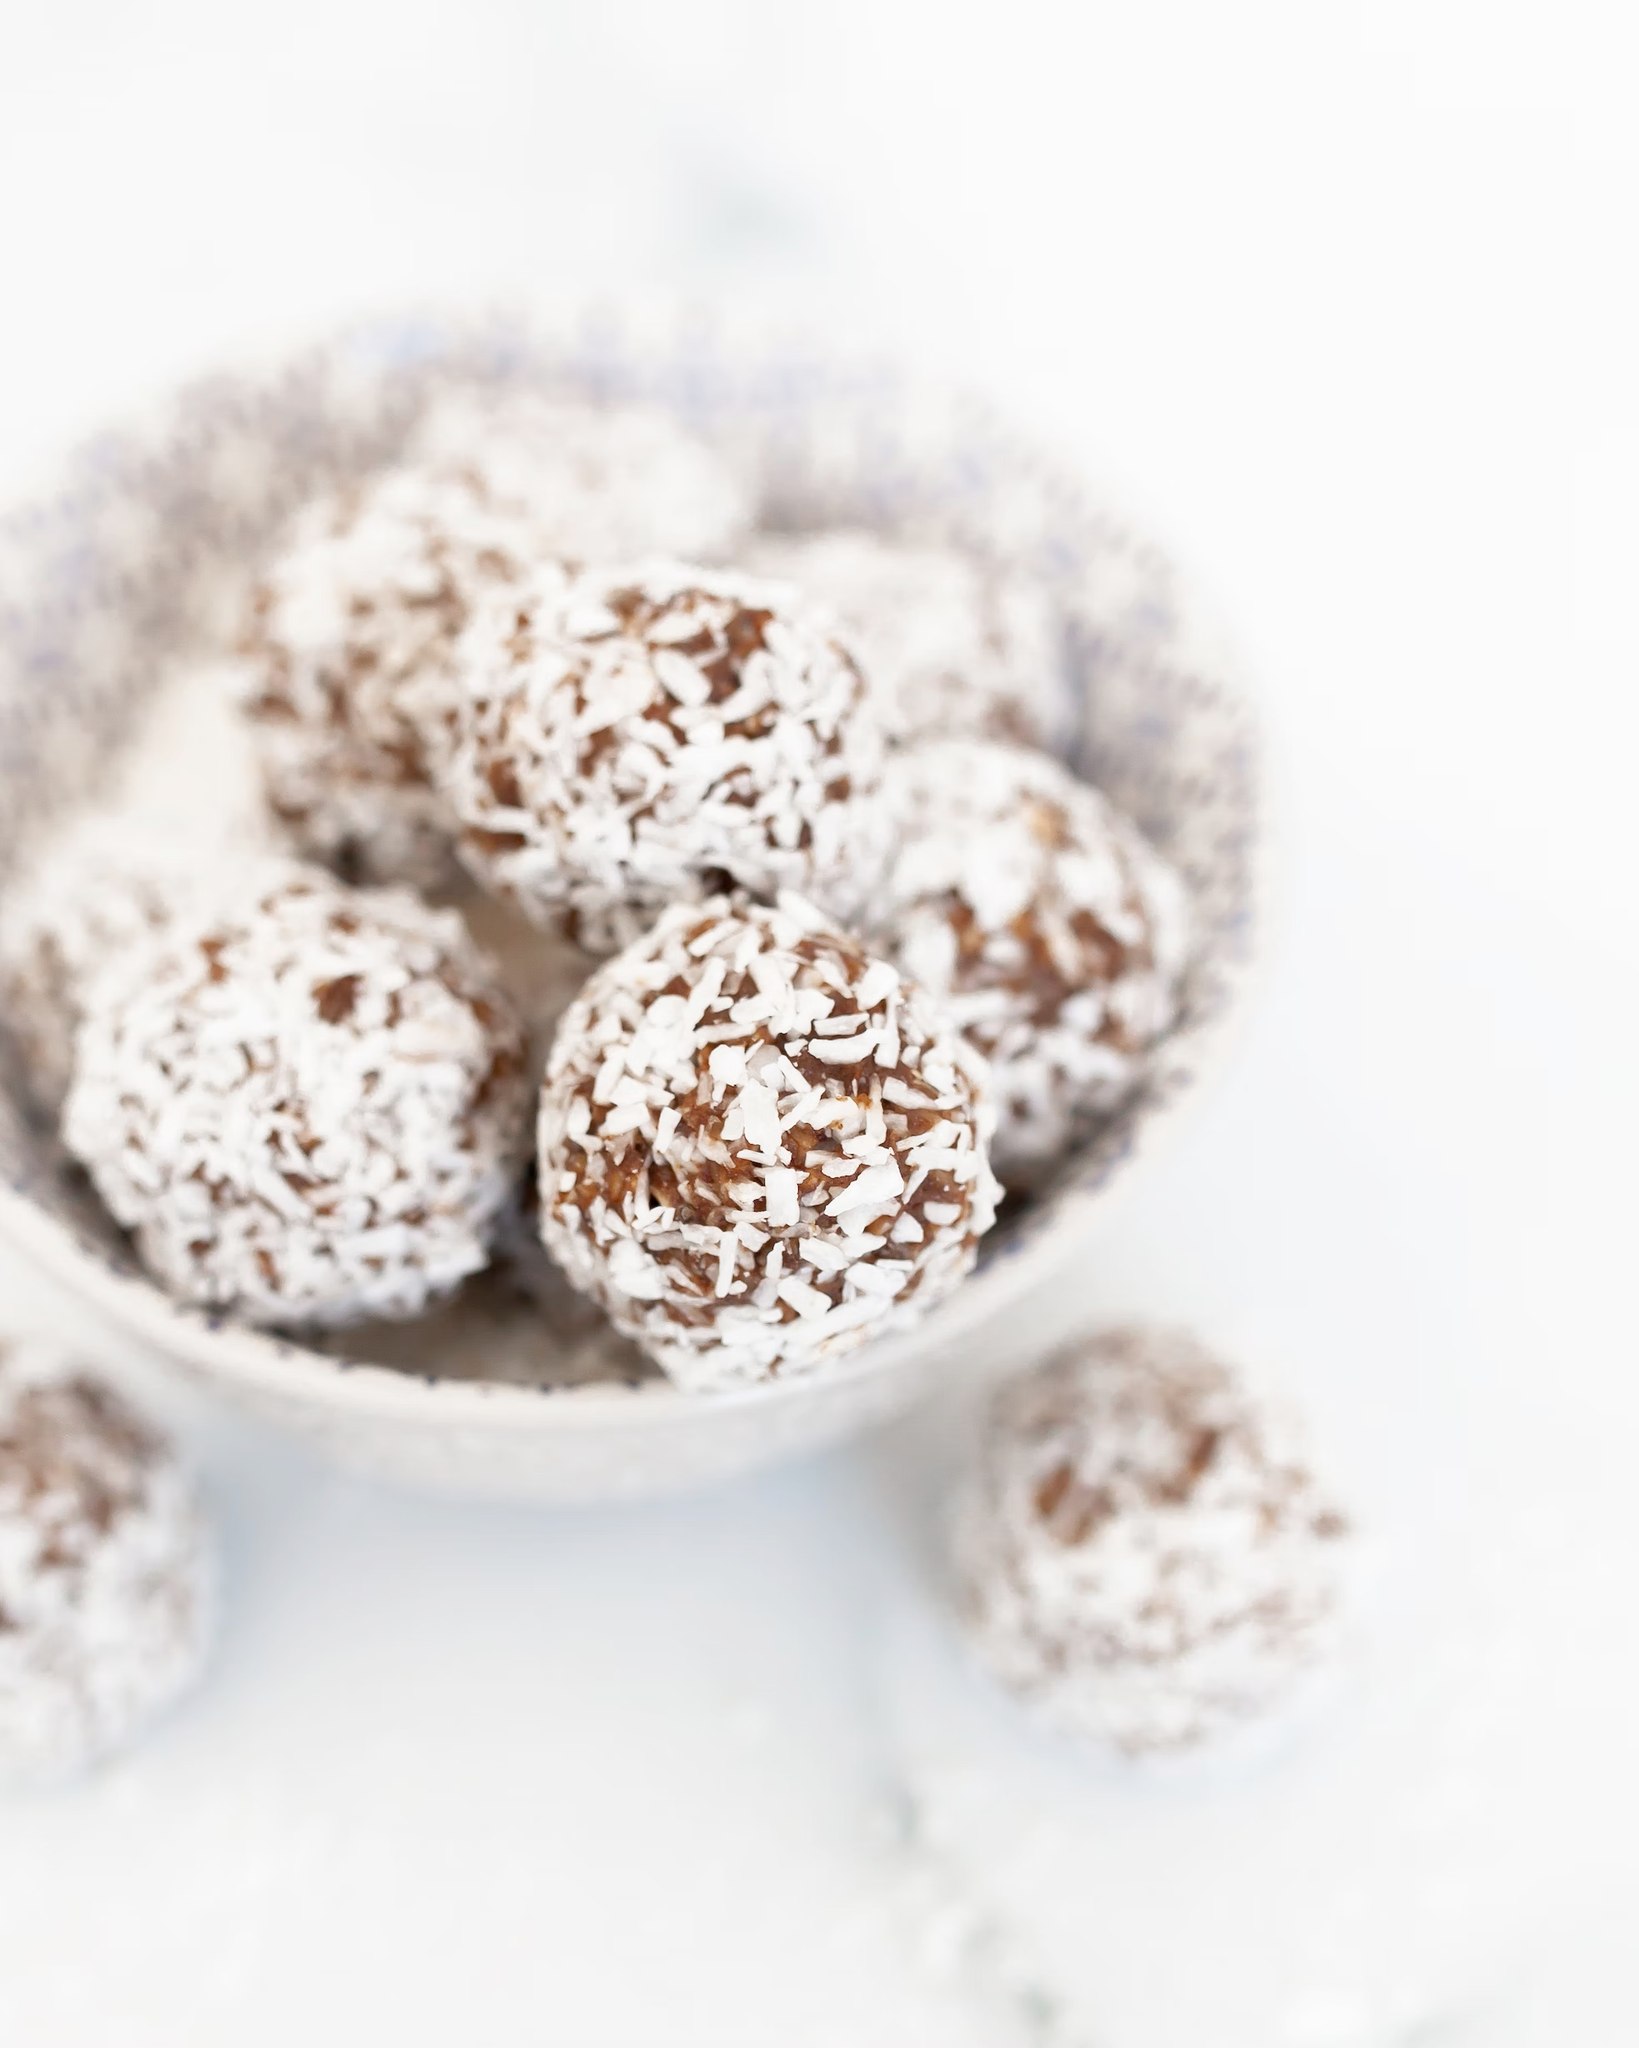 Recette NutriSimple Boules d’énergie au chocolat et noix de coco sans cuisson